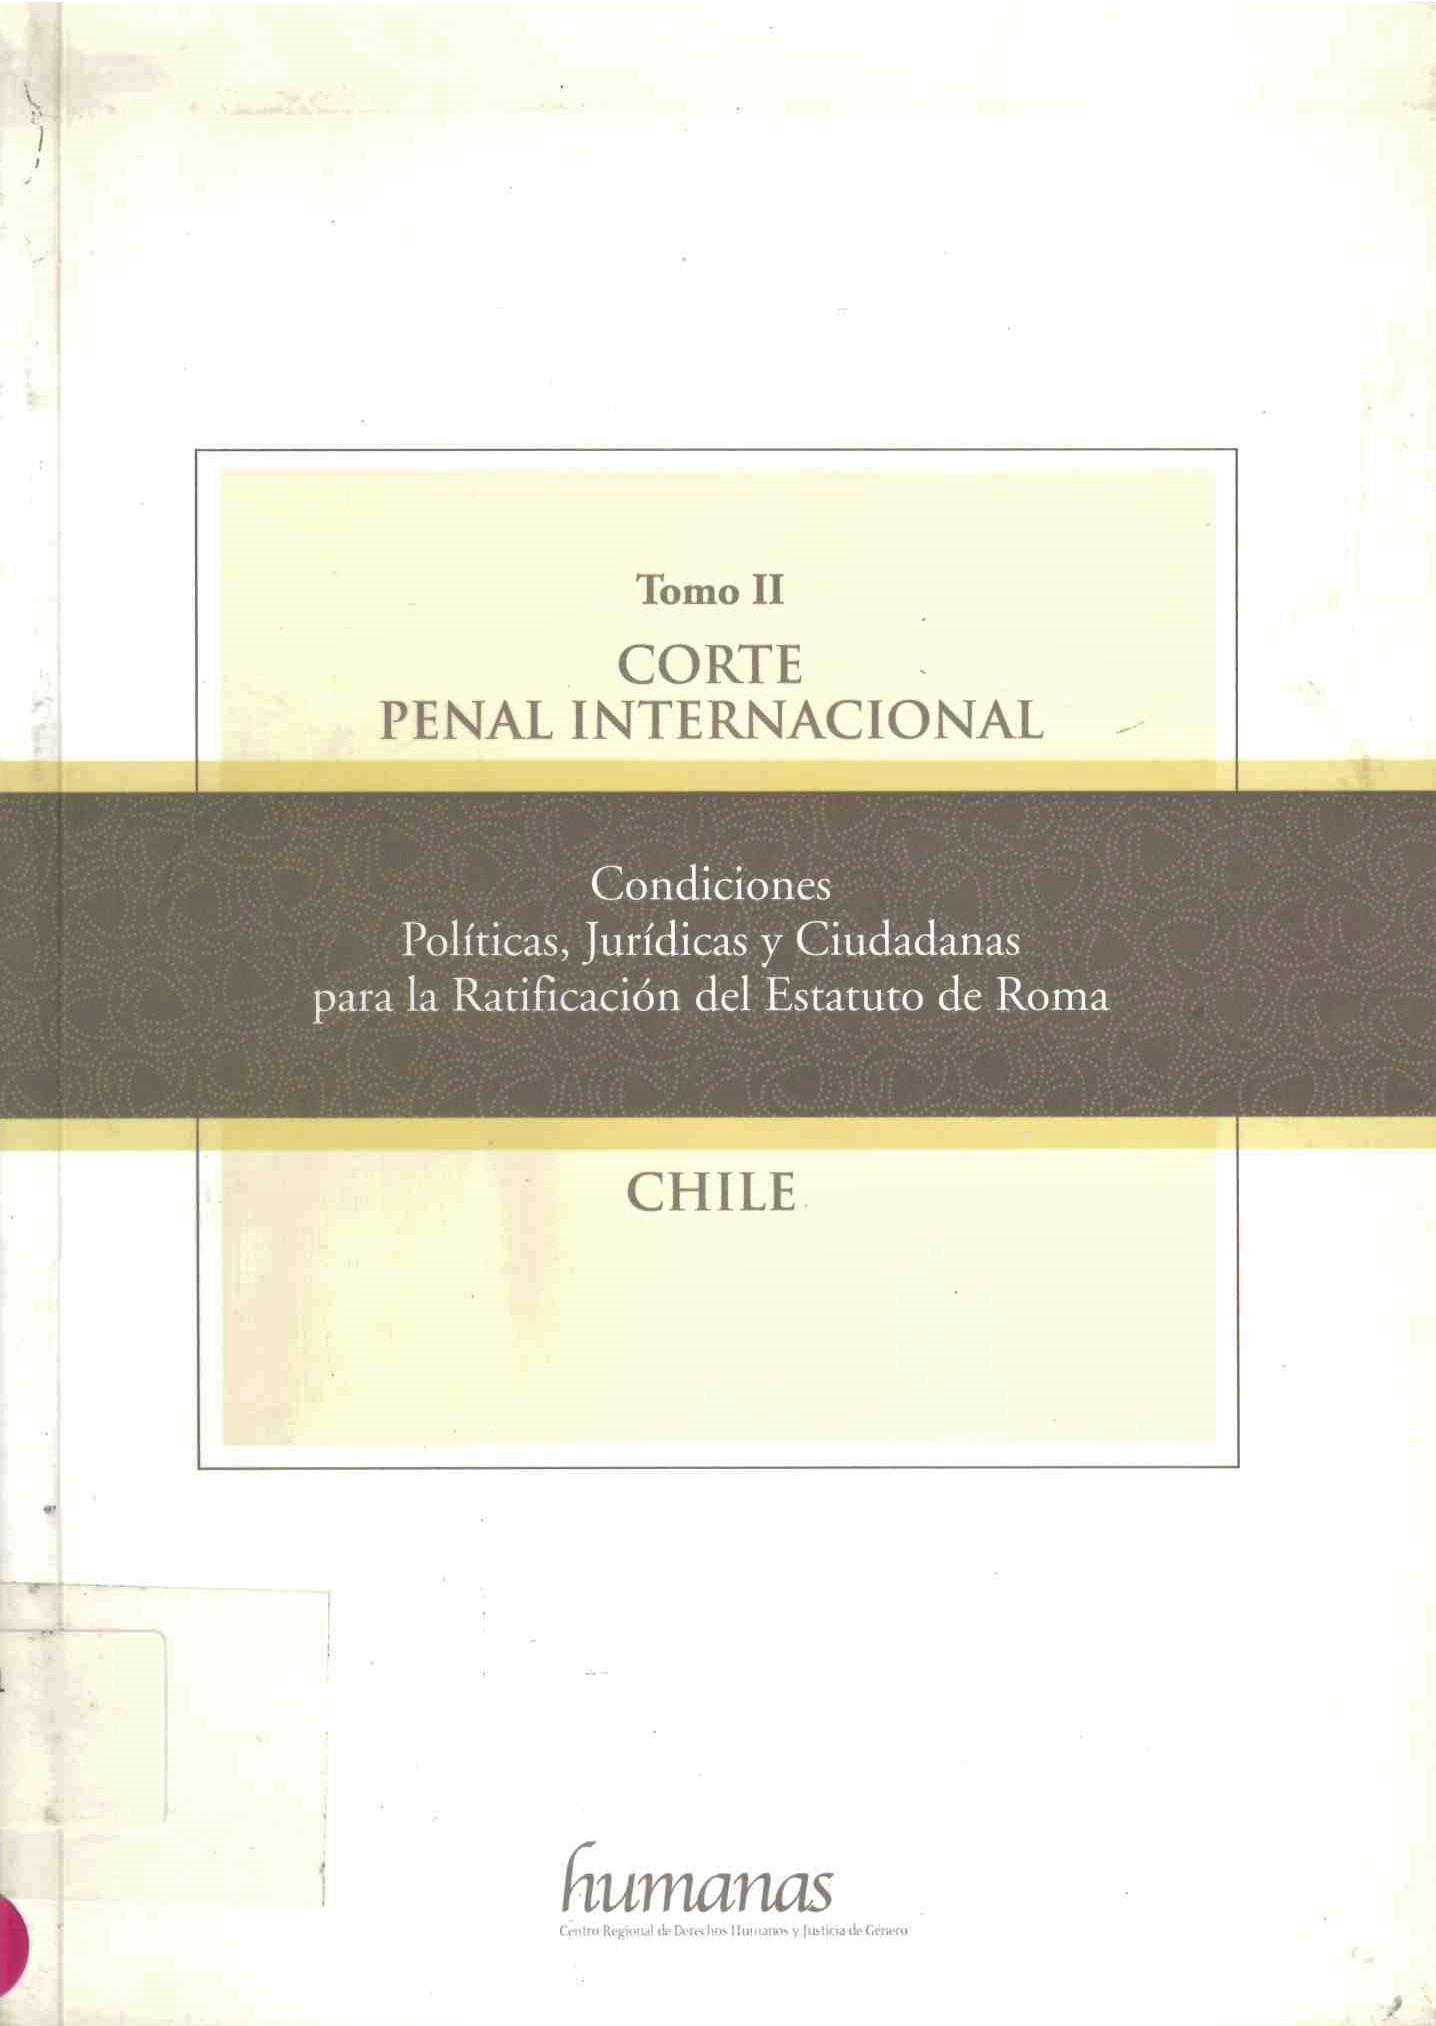 Corte penal internacional: Condiciones políticas, jurídicas y ciudadanas para la Ratificación del Estatuto de Roma- Chile